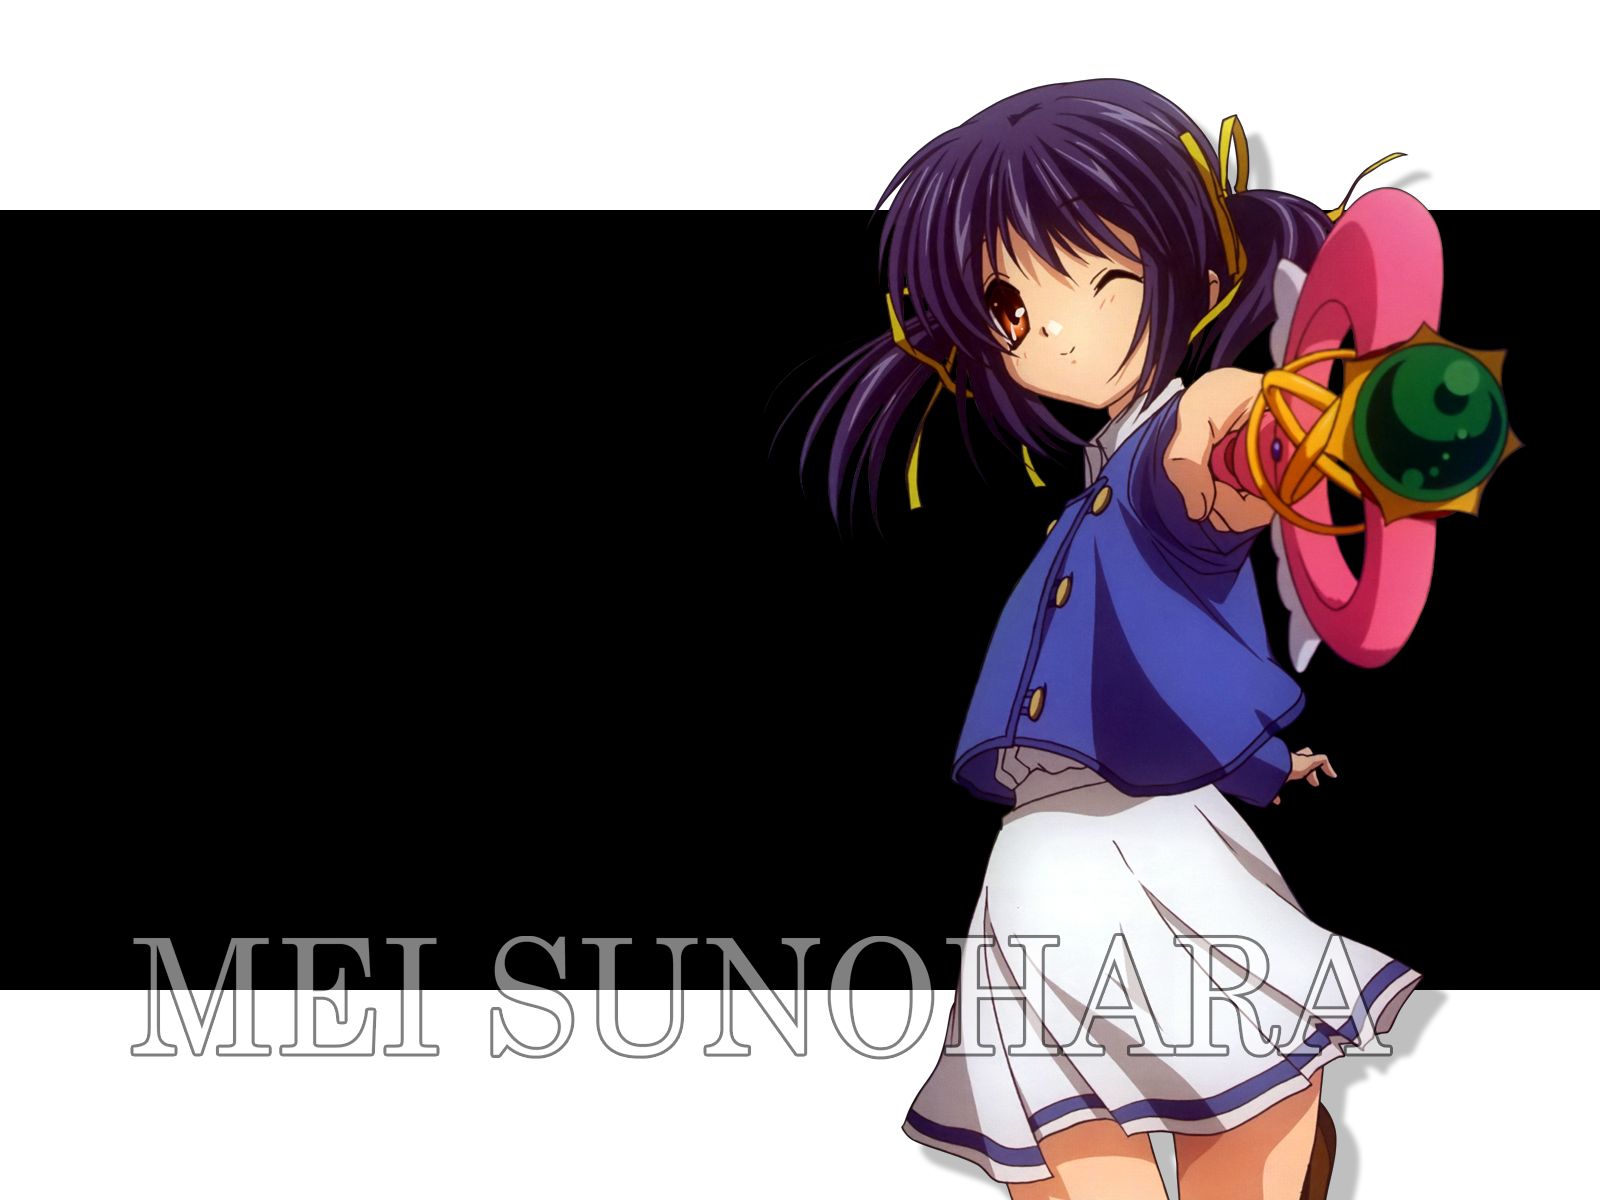 Baixar papel de parede para celular de Anime, Clannad, Mei Sunohara gratuito.